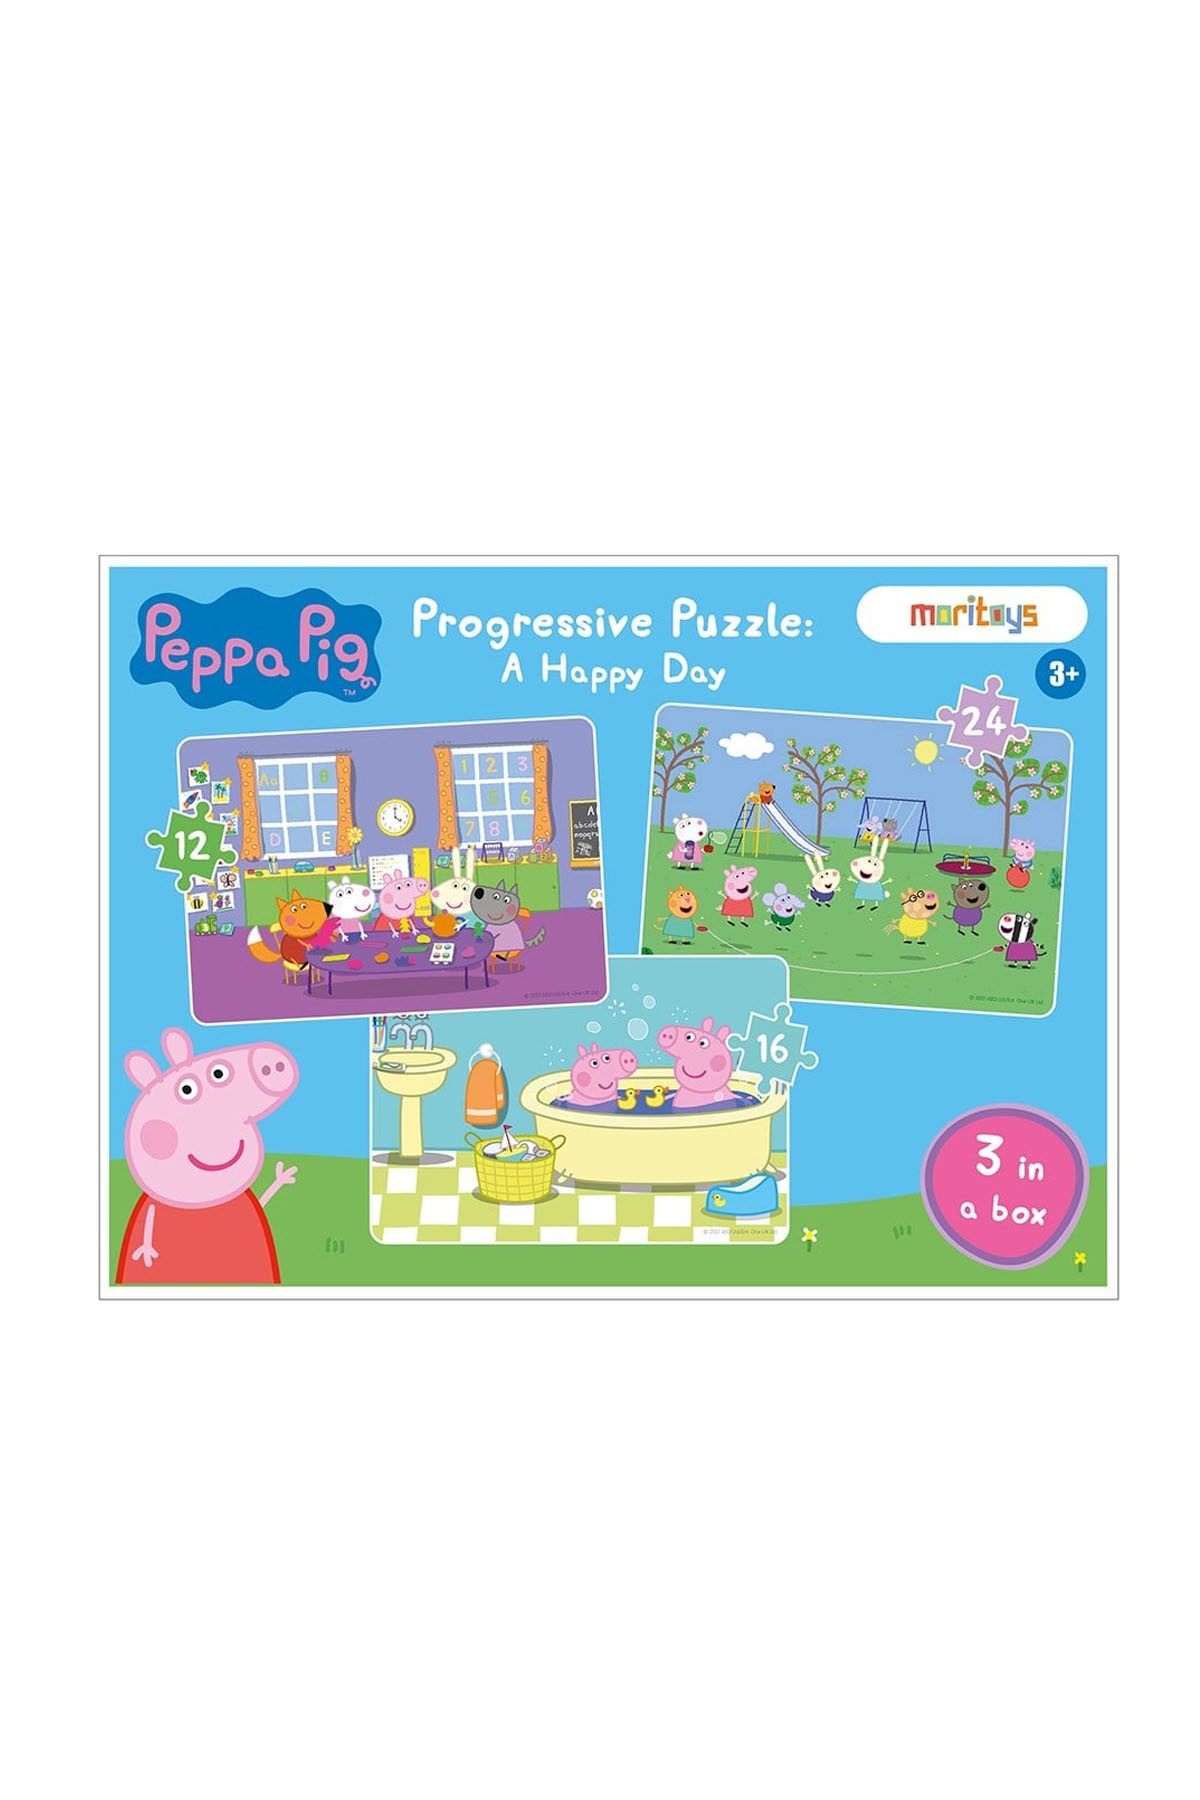 Moritoys Peppa Pig Progressive Puzzle: A Happy Day